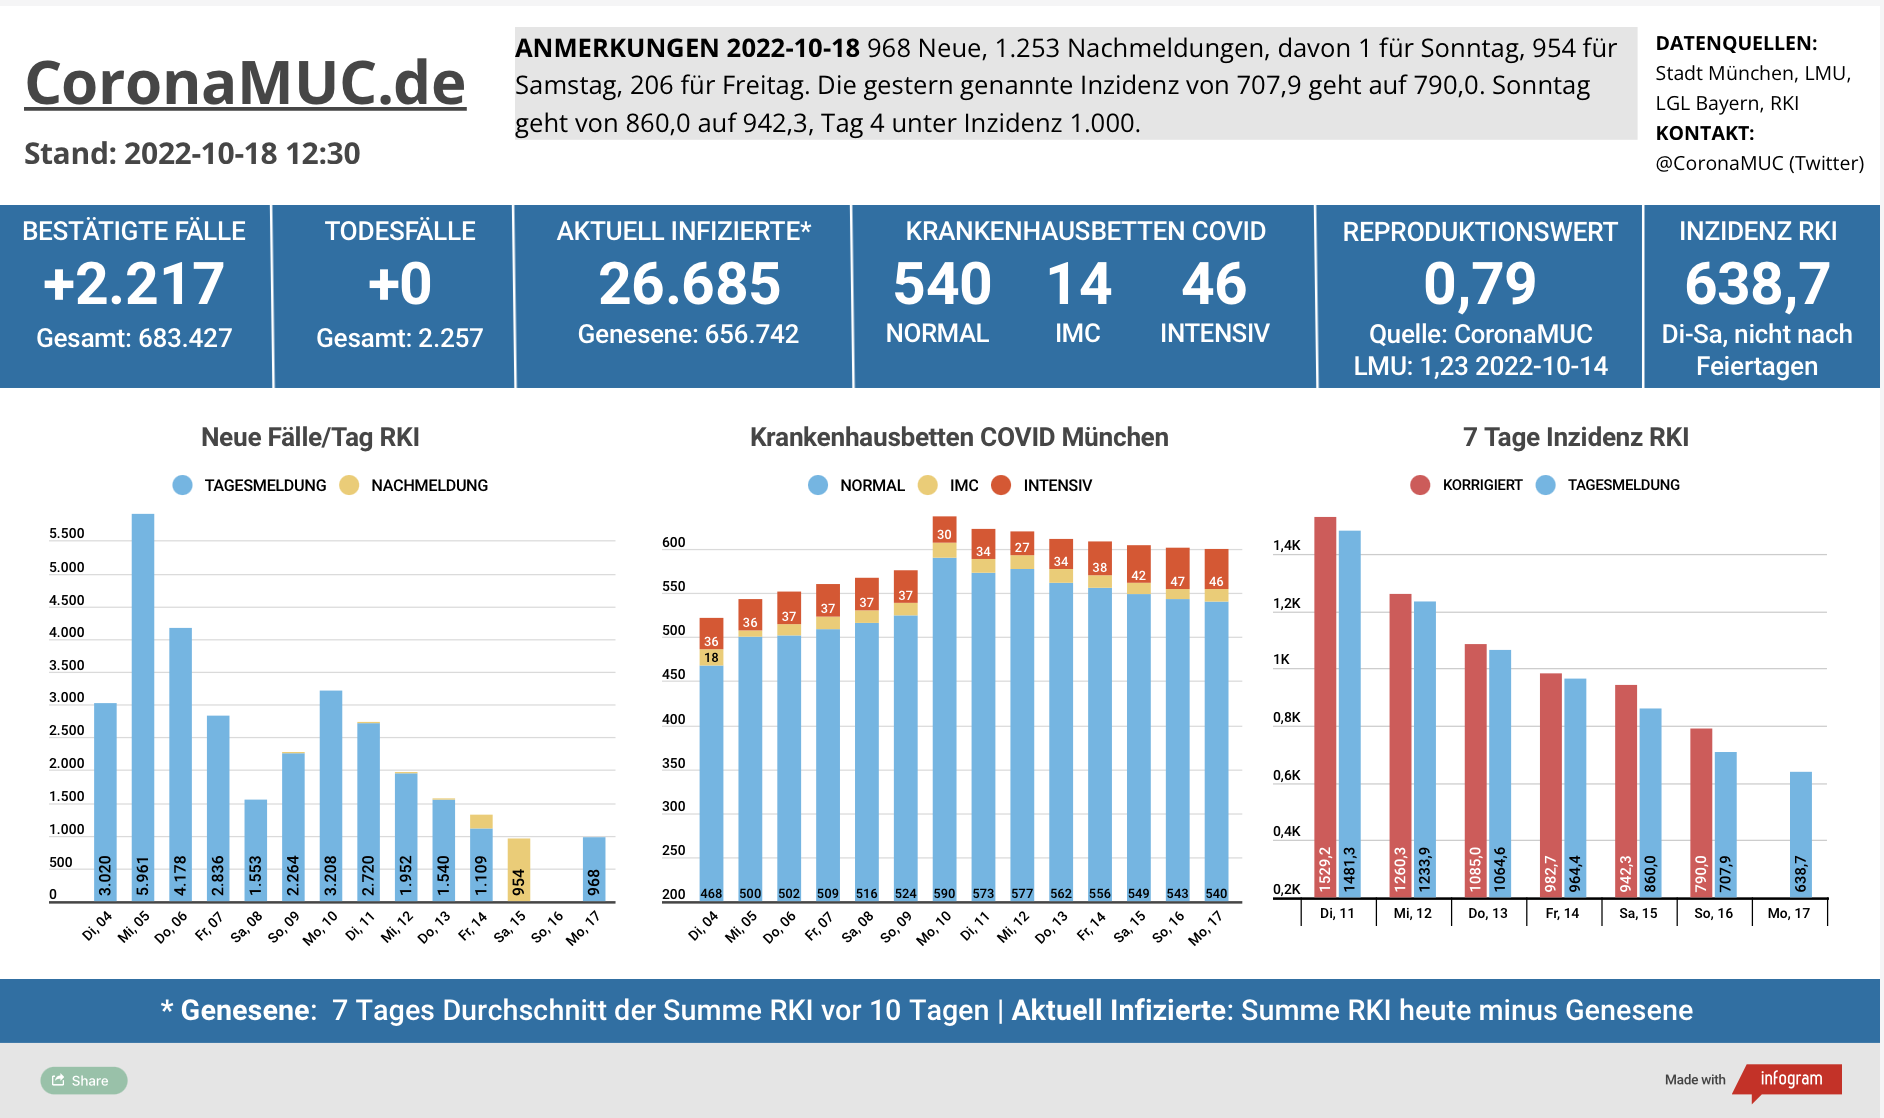 2022-10-18 Dashboard mit den Zahlen für München. Drei Balkengrafiken. Erste zeigt Neu- und Nachmeldungen, im Vergleich zur Vorwoche sinken die Zahlen. Zweite zeigt Krankenbetten, die sich auf sehr hohem Niveau stabilisieren. Dritte zeigt Inzidenz, die den Höhepunkt überschritten hat und seit 7 Tagen sinkt.